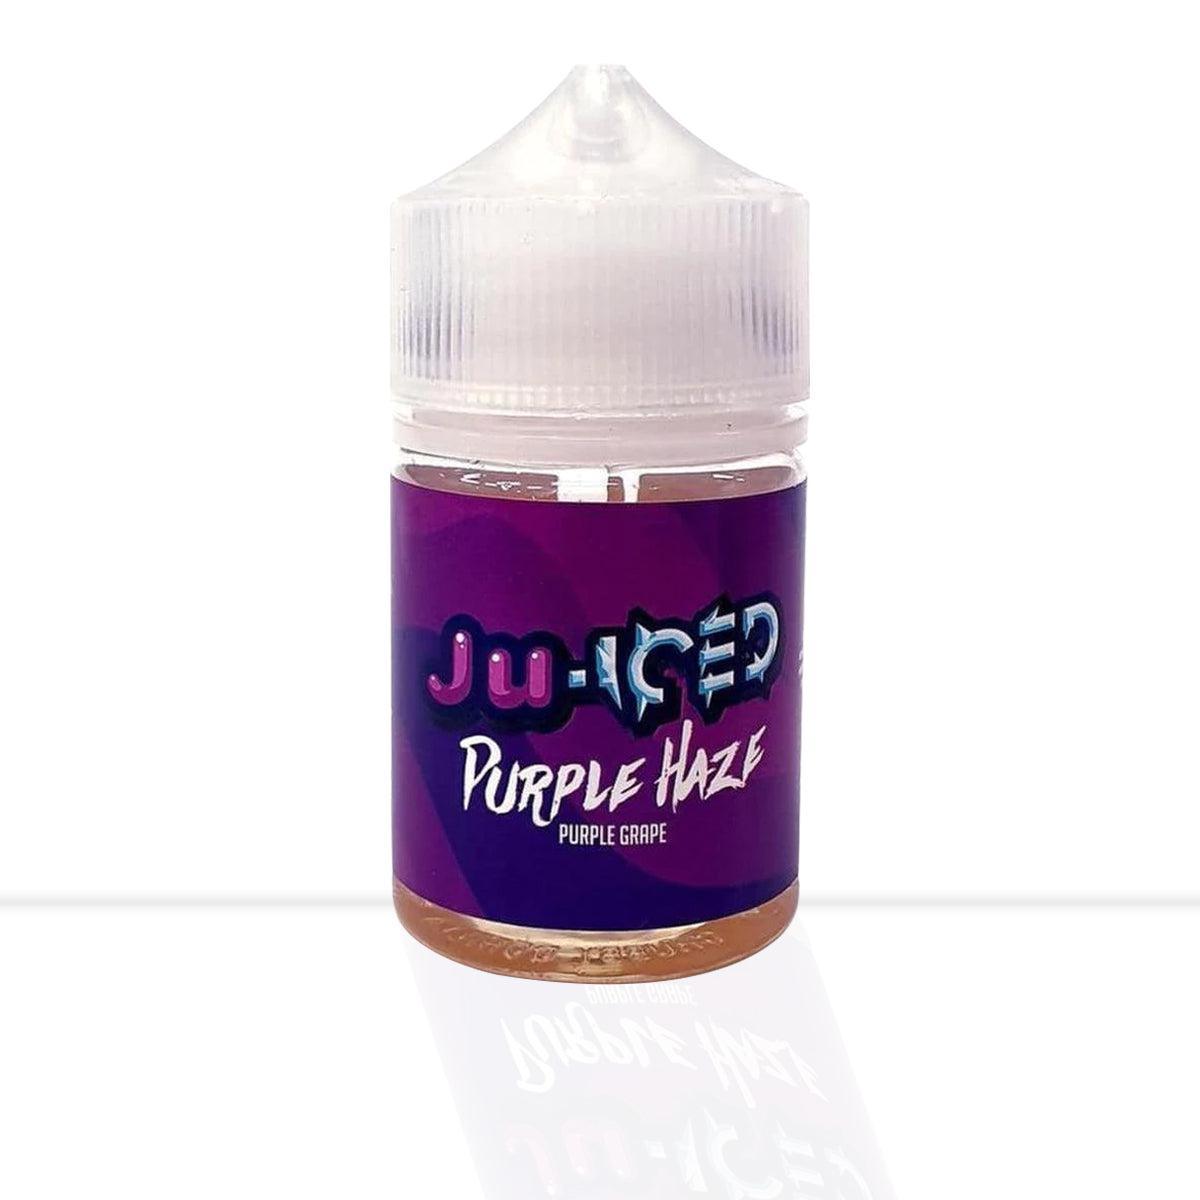 Purple Haze Shortfill E-Liquid JUICED - Purple Haze Shortfill E-Liquid JUICED - E Liquid